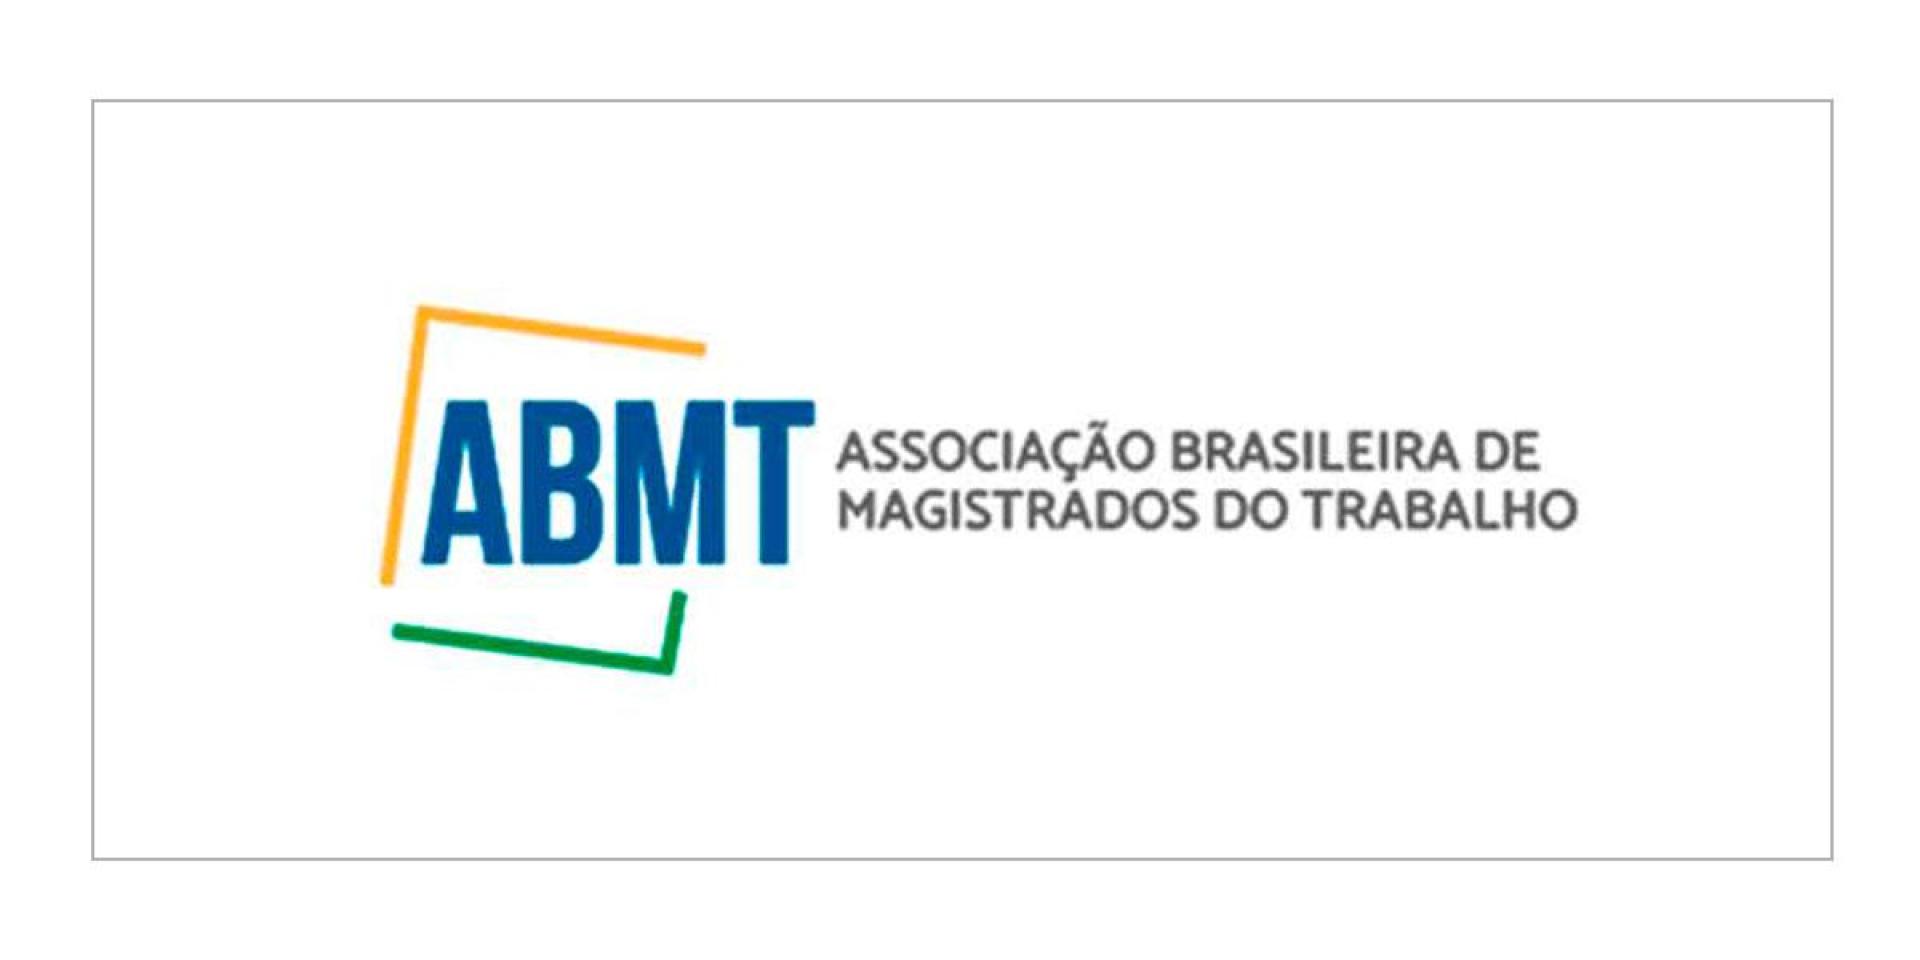 Associação Brasileira de Magistrados do Trabalho